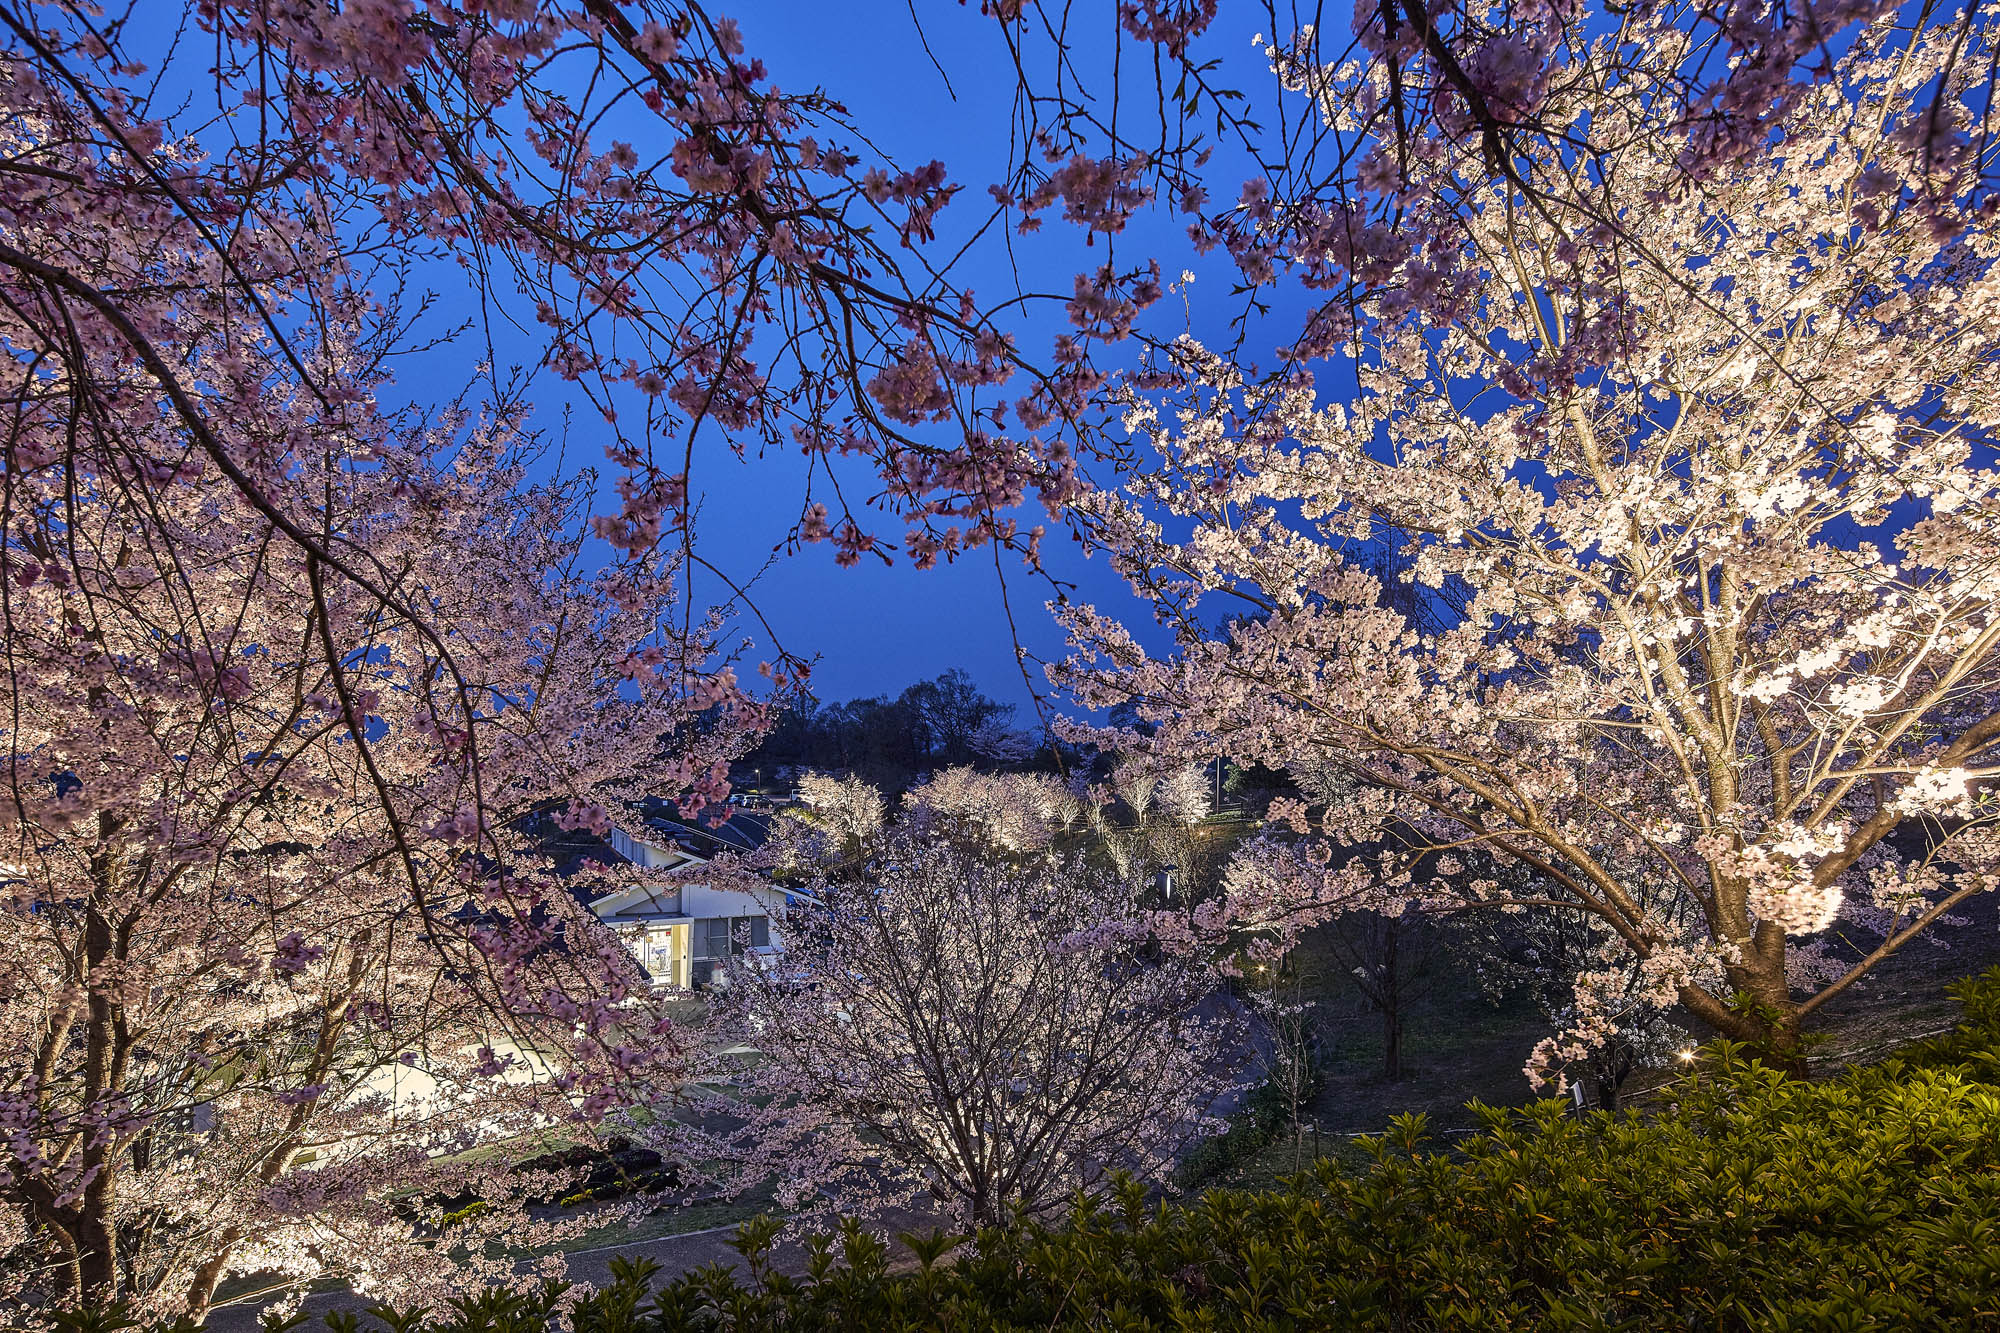 桜を白っぽい光でライトアップしている様子